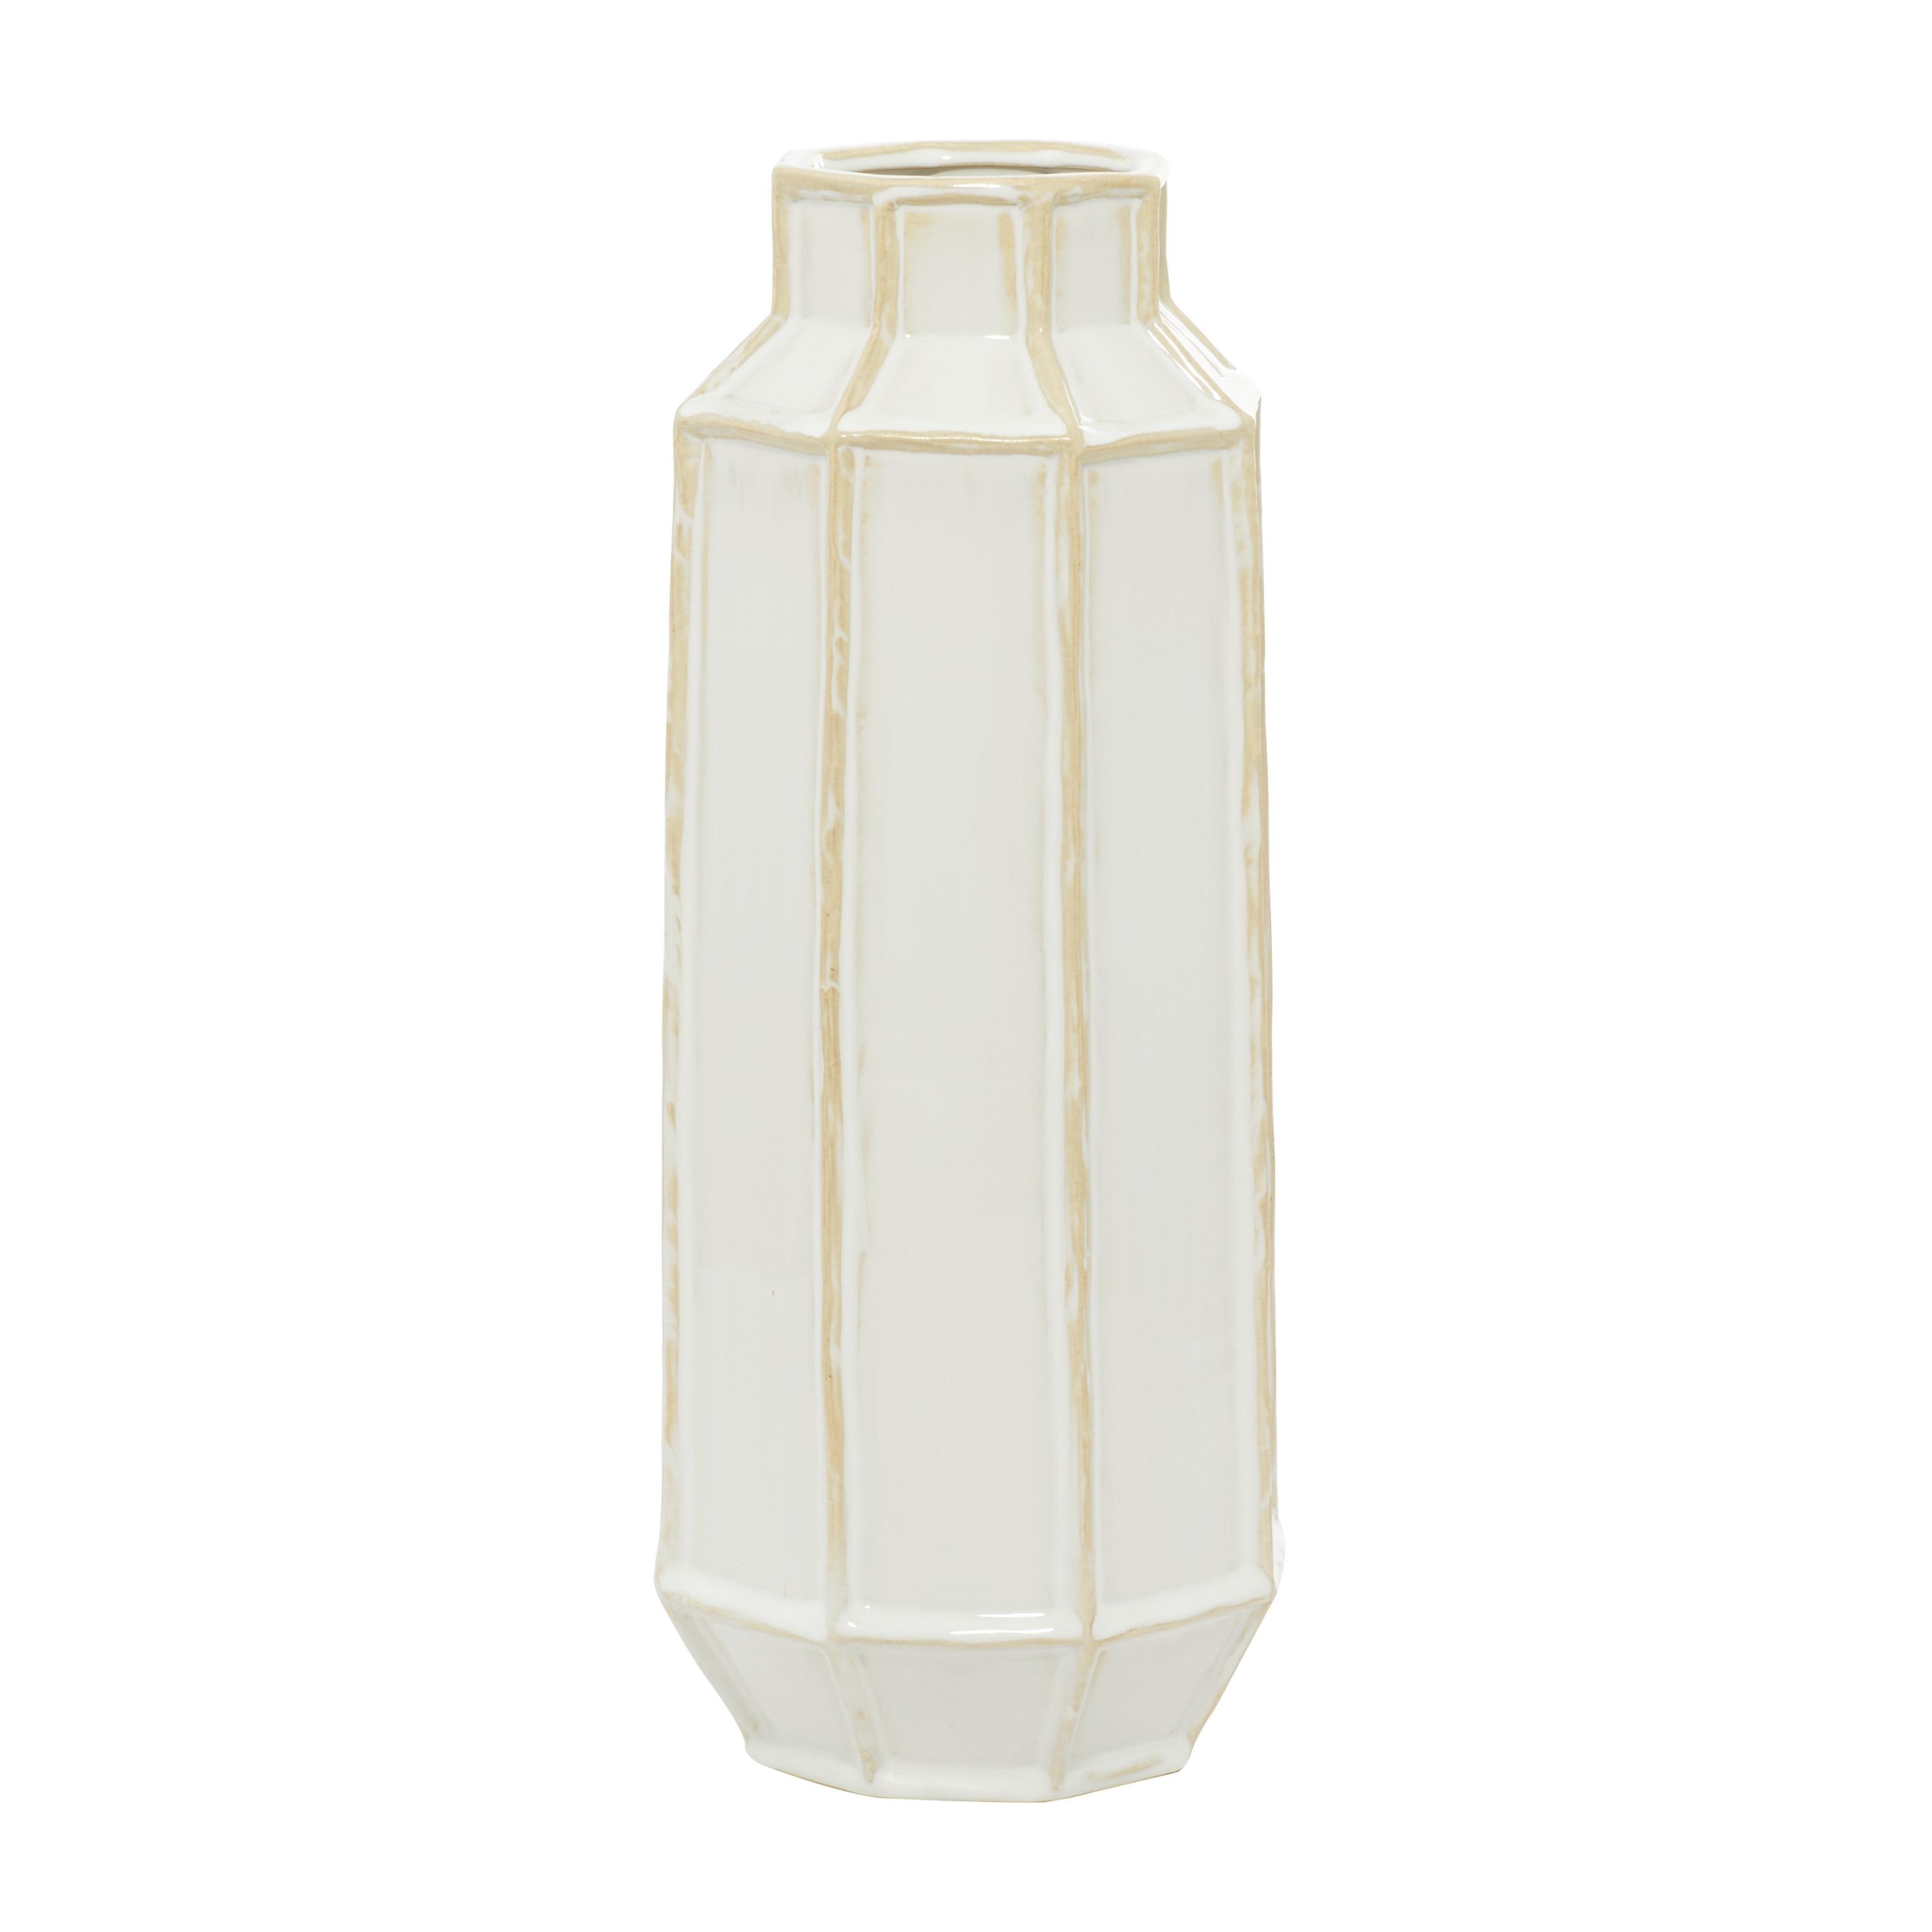 Elegant White and Beige Ceramic Bouquet Vase 6.6" x 16.7"